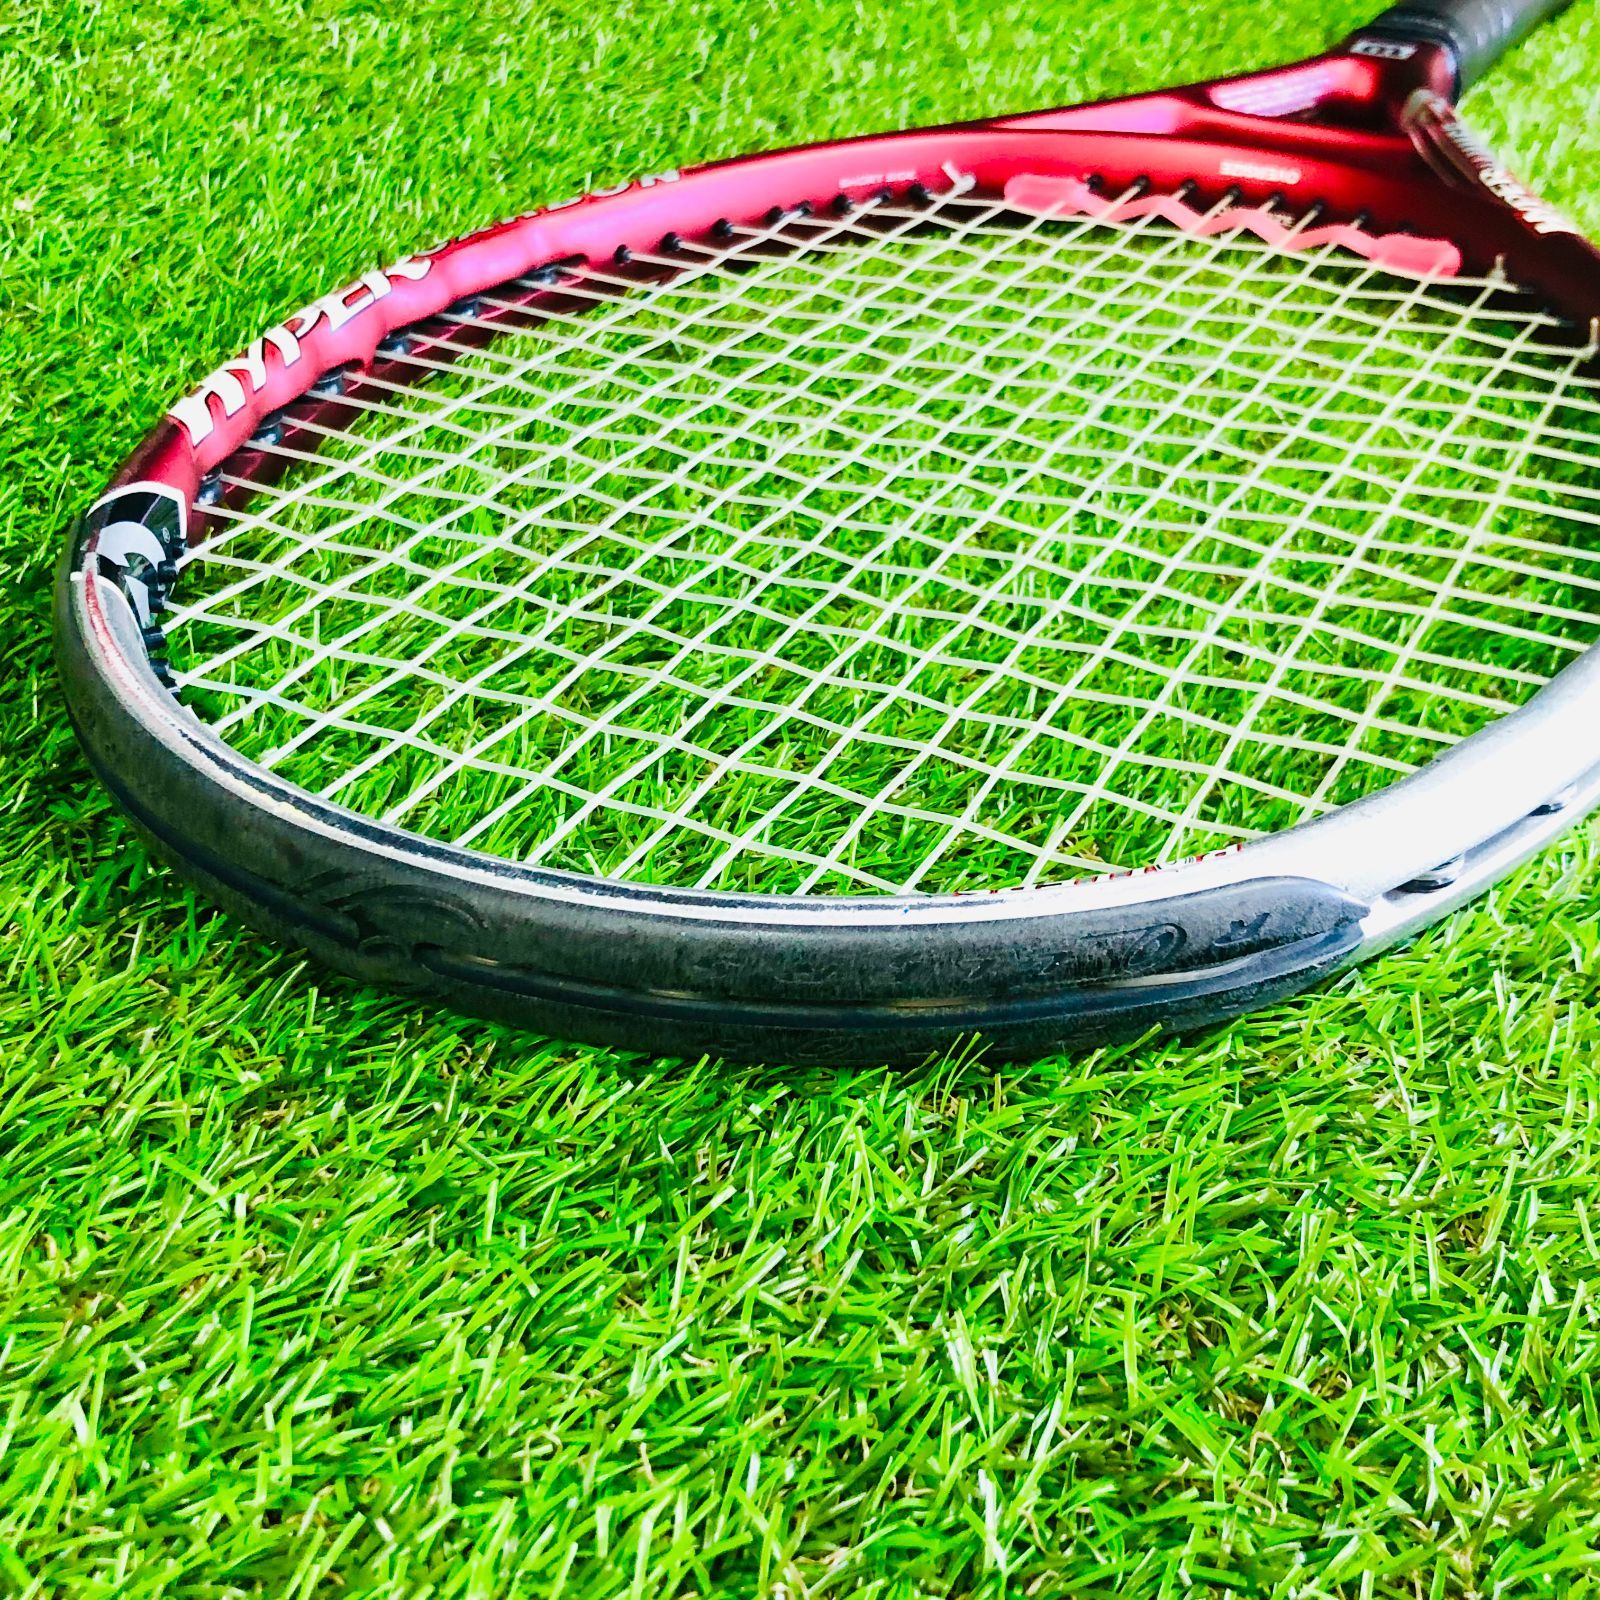 中古 テニスラケット ウィルソン ハイパー ハンマー 5.6 ローラー 110 2002年モデル (G2)WILSON HYPER HAMMER  5.6 ROLLERS